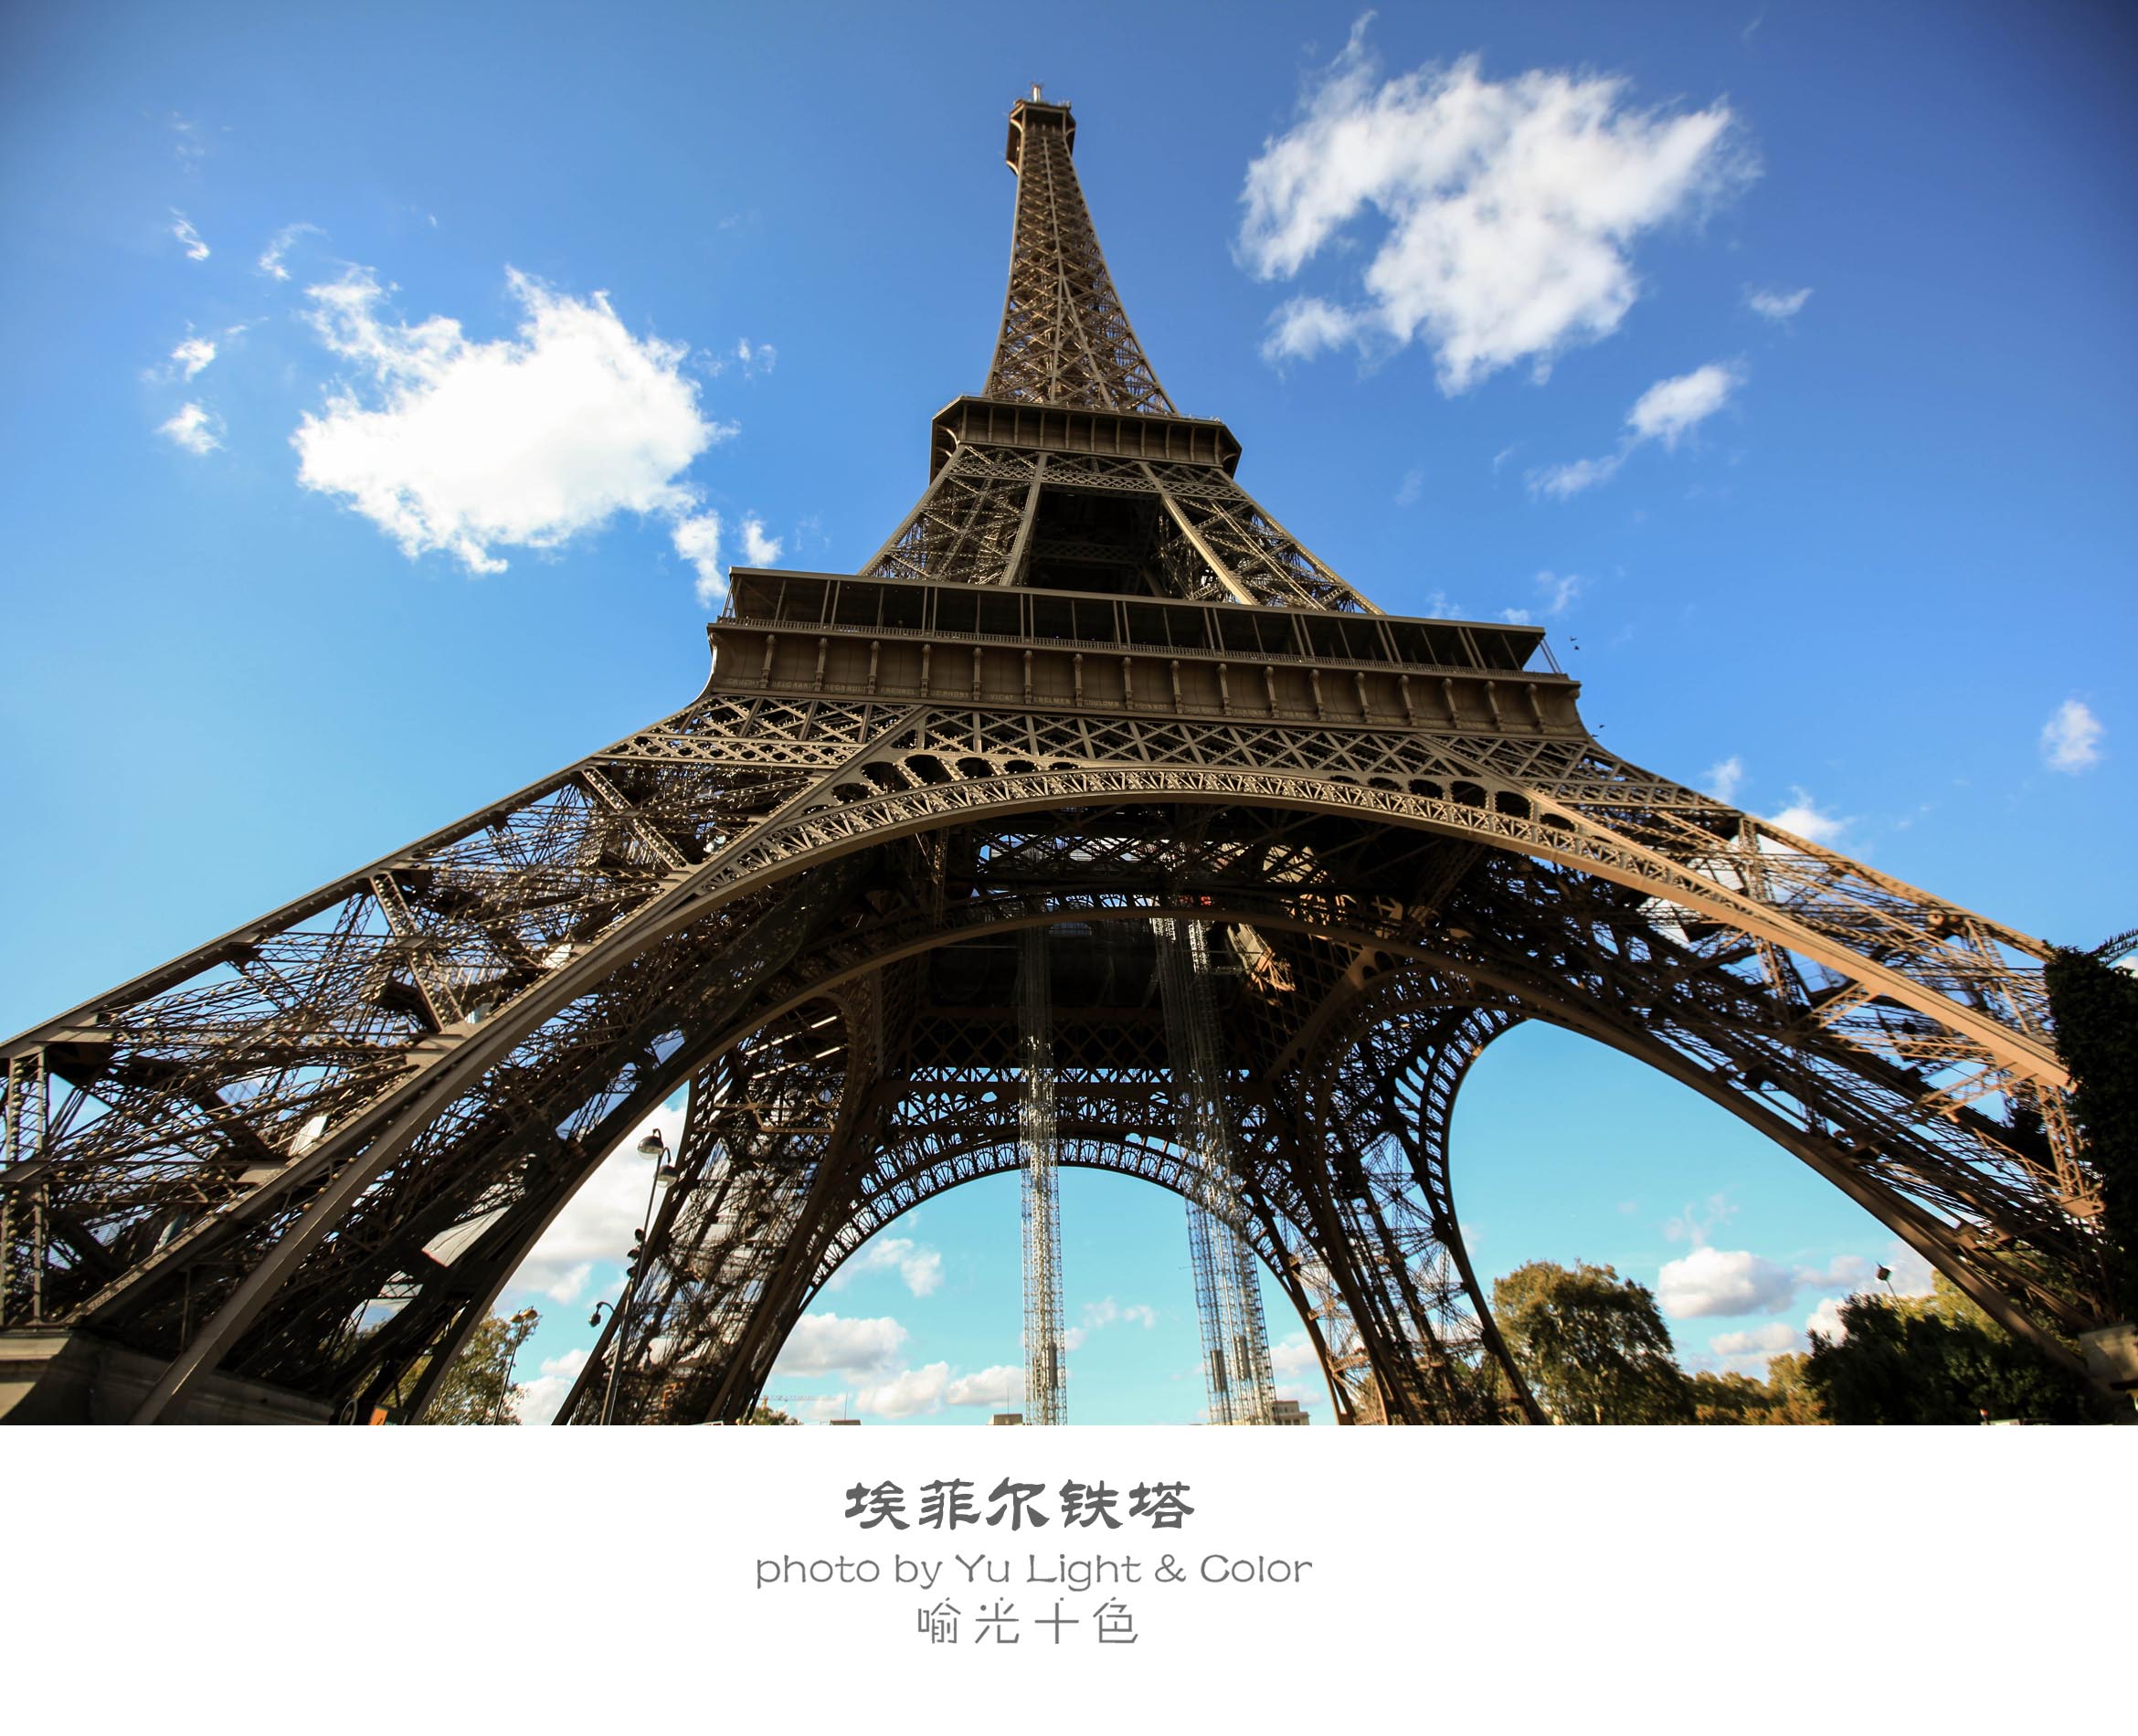 图片素材 : 埃菲尔铁塔, 巴黎, 黄昏, 晚间, 地标, 钟楼, 晚上, 灯, 尖塔, 尖顶, 夜图片 2066x2781 - - 1342756 - 素材中国, 高清壁纸 - PxHere摄影图库